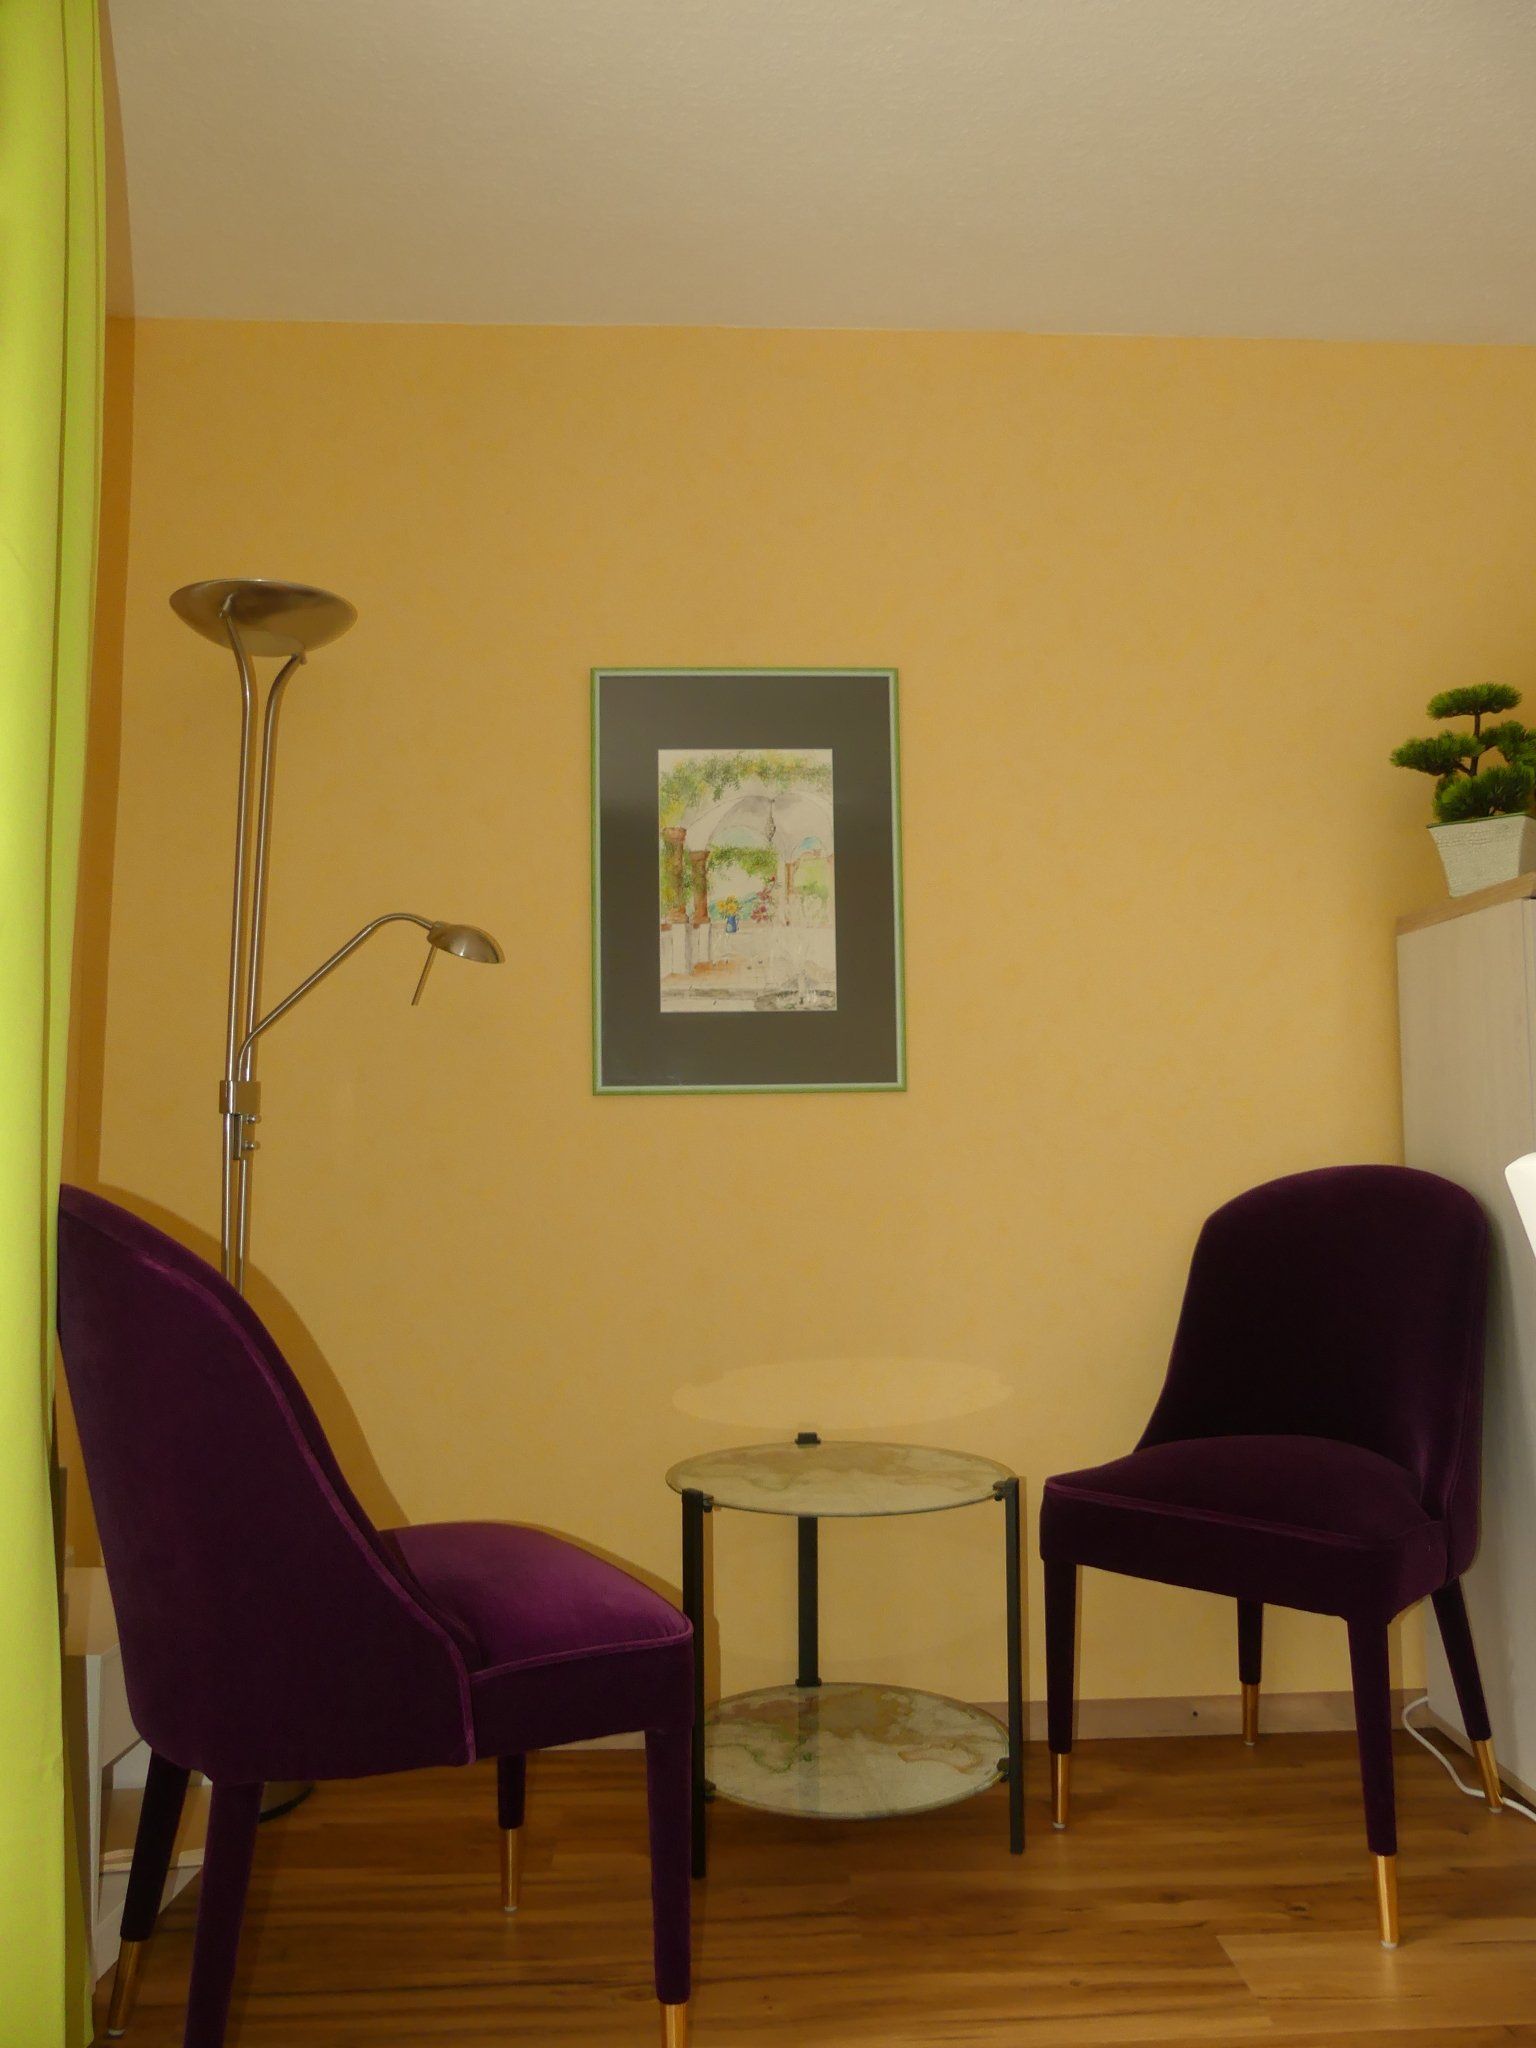 Bereich für Psychotherapie, kleiner Tisch mit zwei bequemen Sesseln